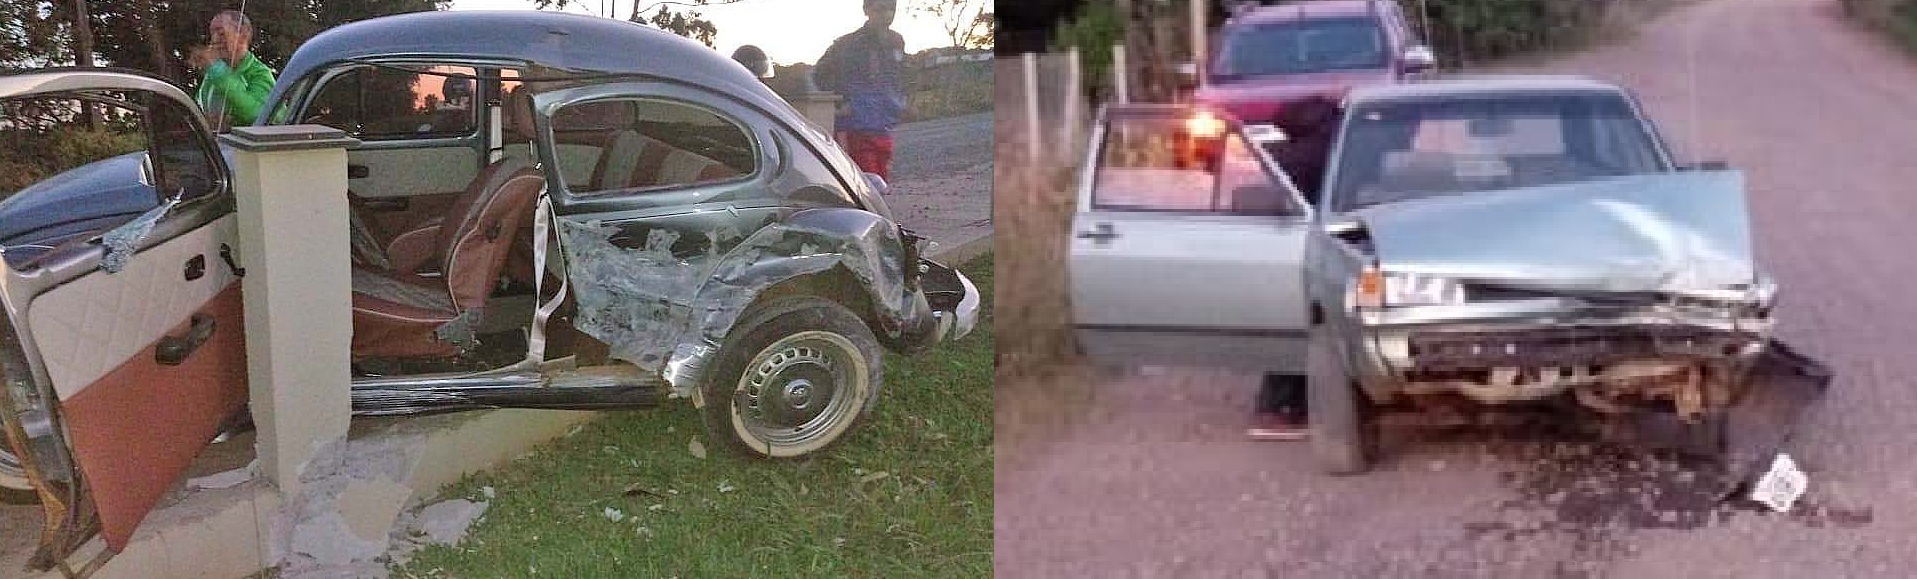 Condutor possivelmente embriagado bate carro e foge para o mato em Piratuba